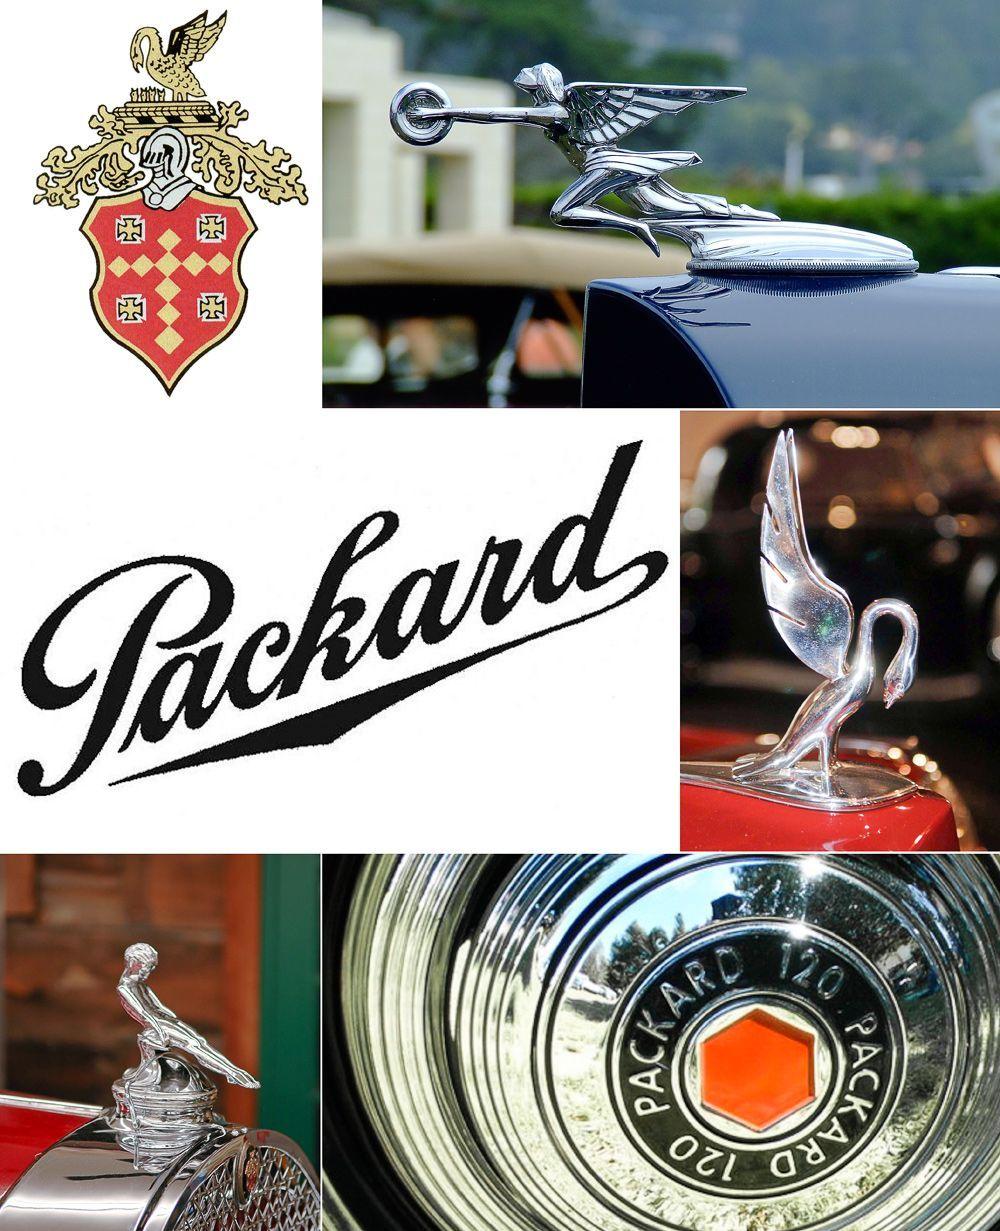 Packard Car Logo - Packard - Script, Logo, Hubcap, and Assorted Hood Ornaments ...